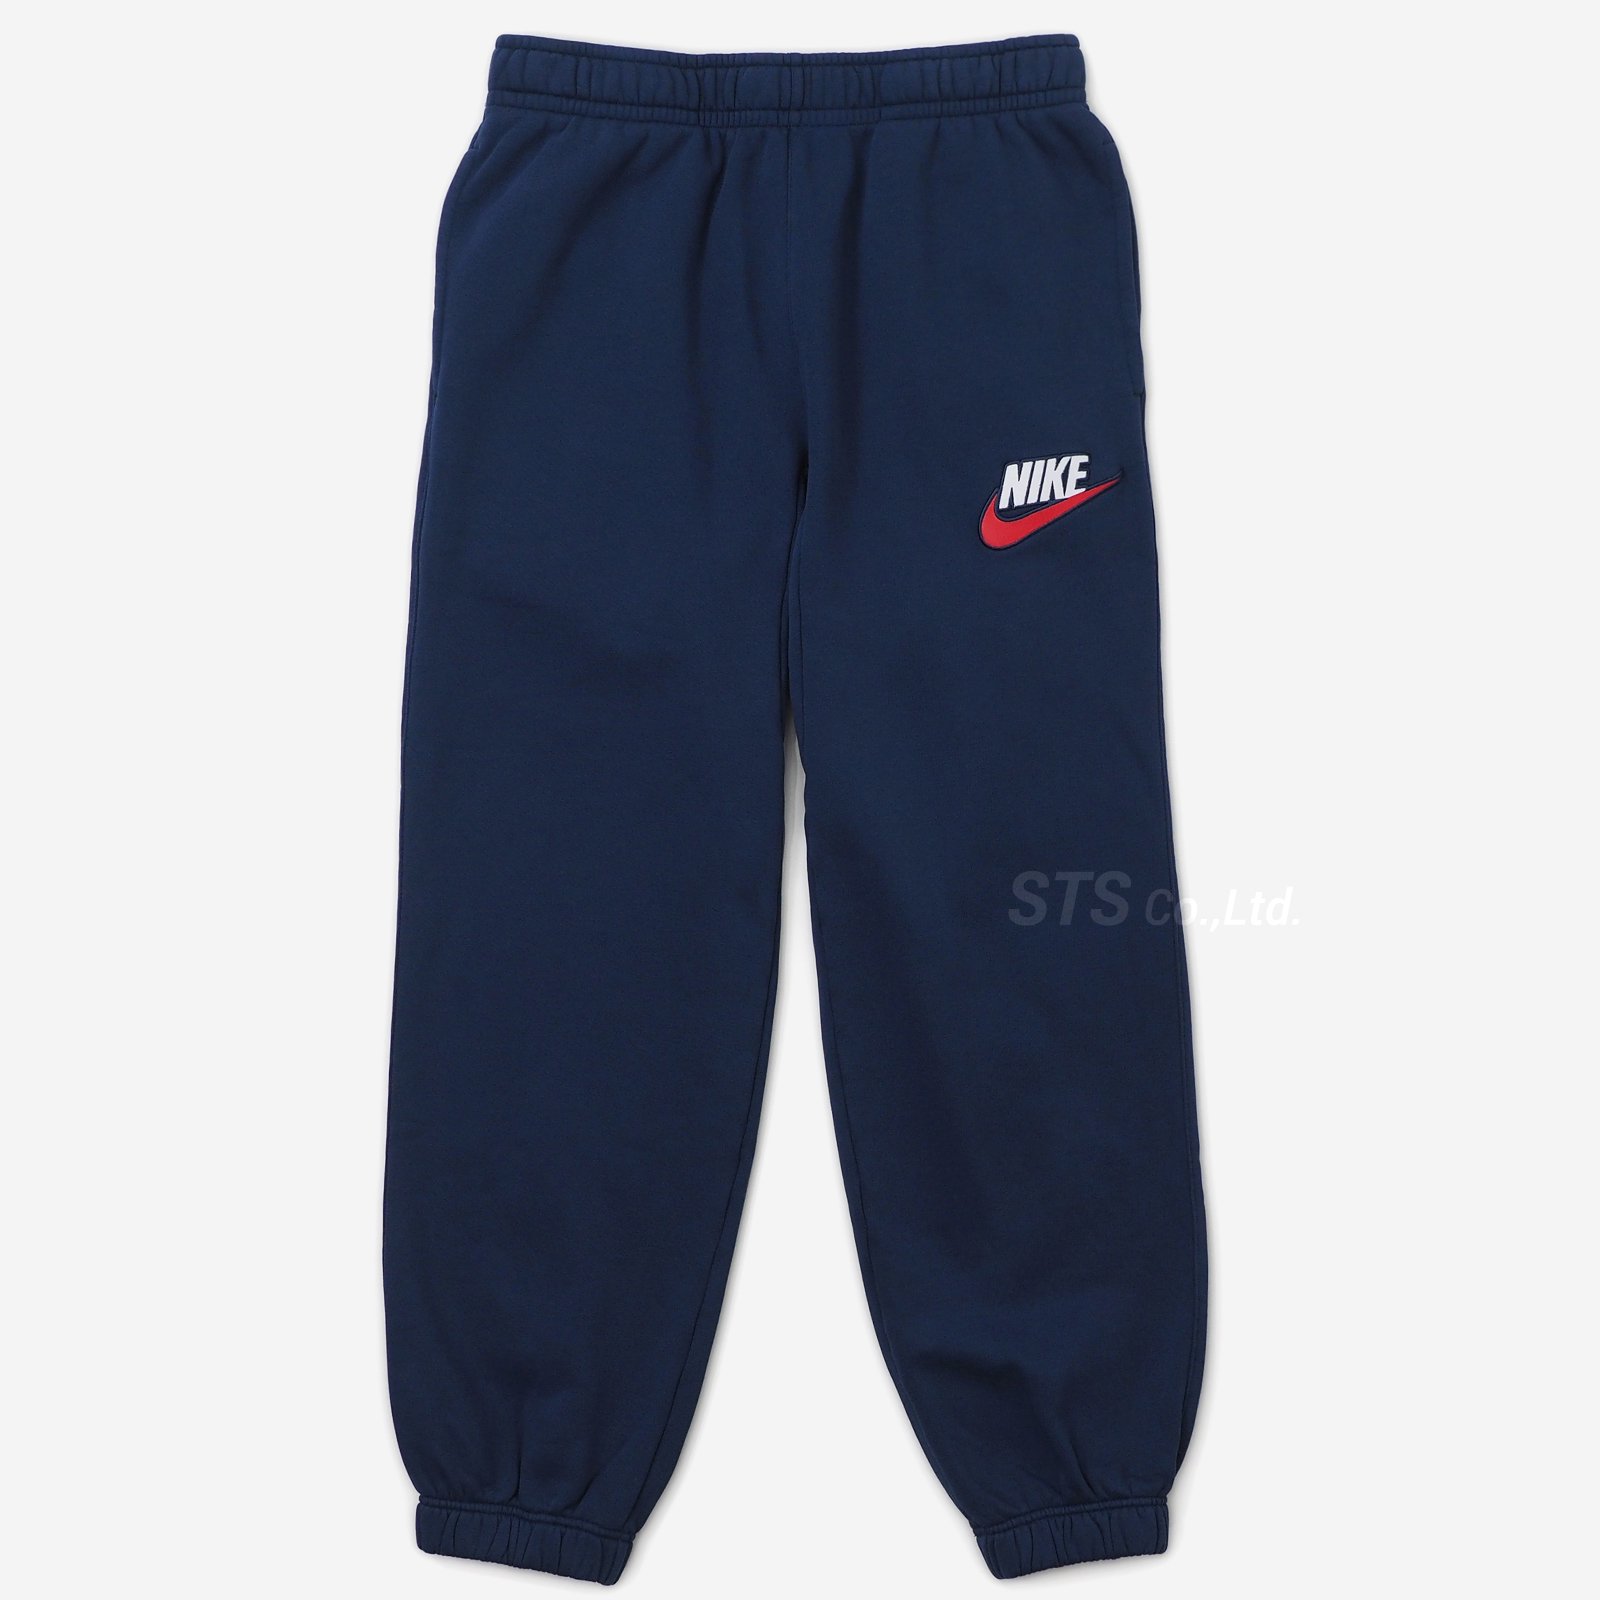 Supreme/Nike Sweatpant - UG.SHAFT